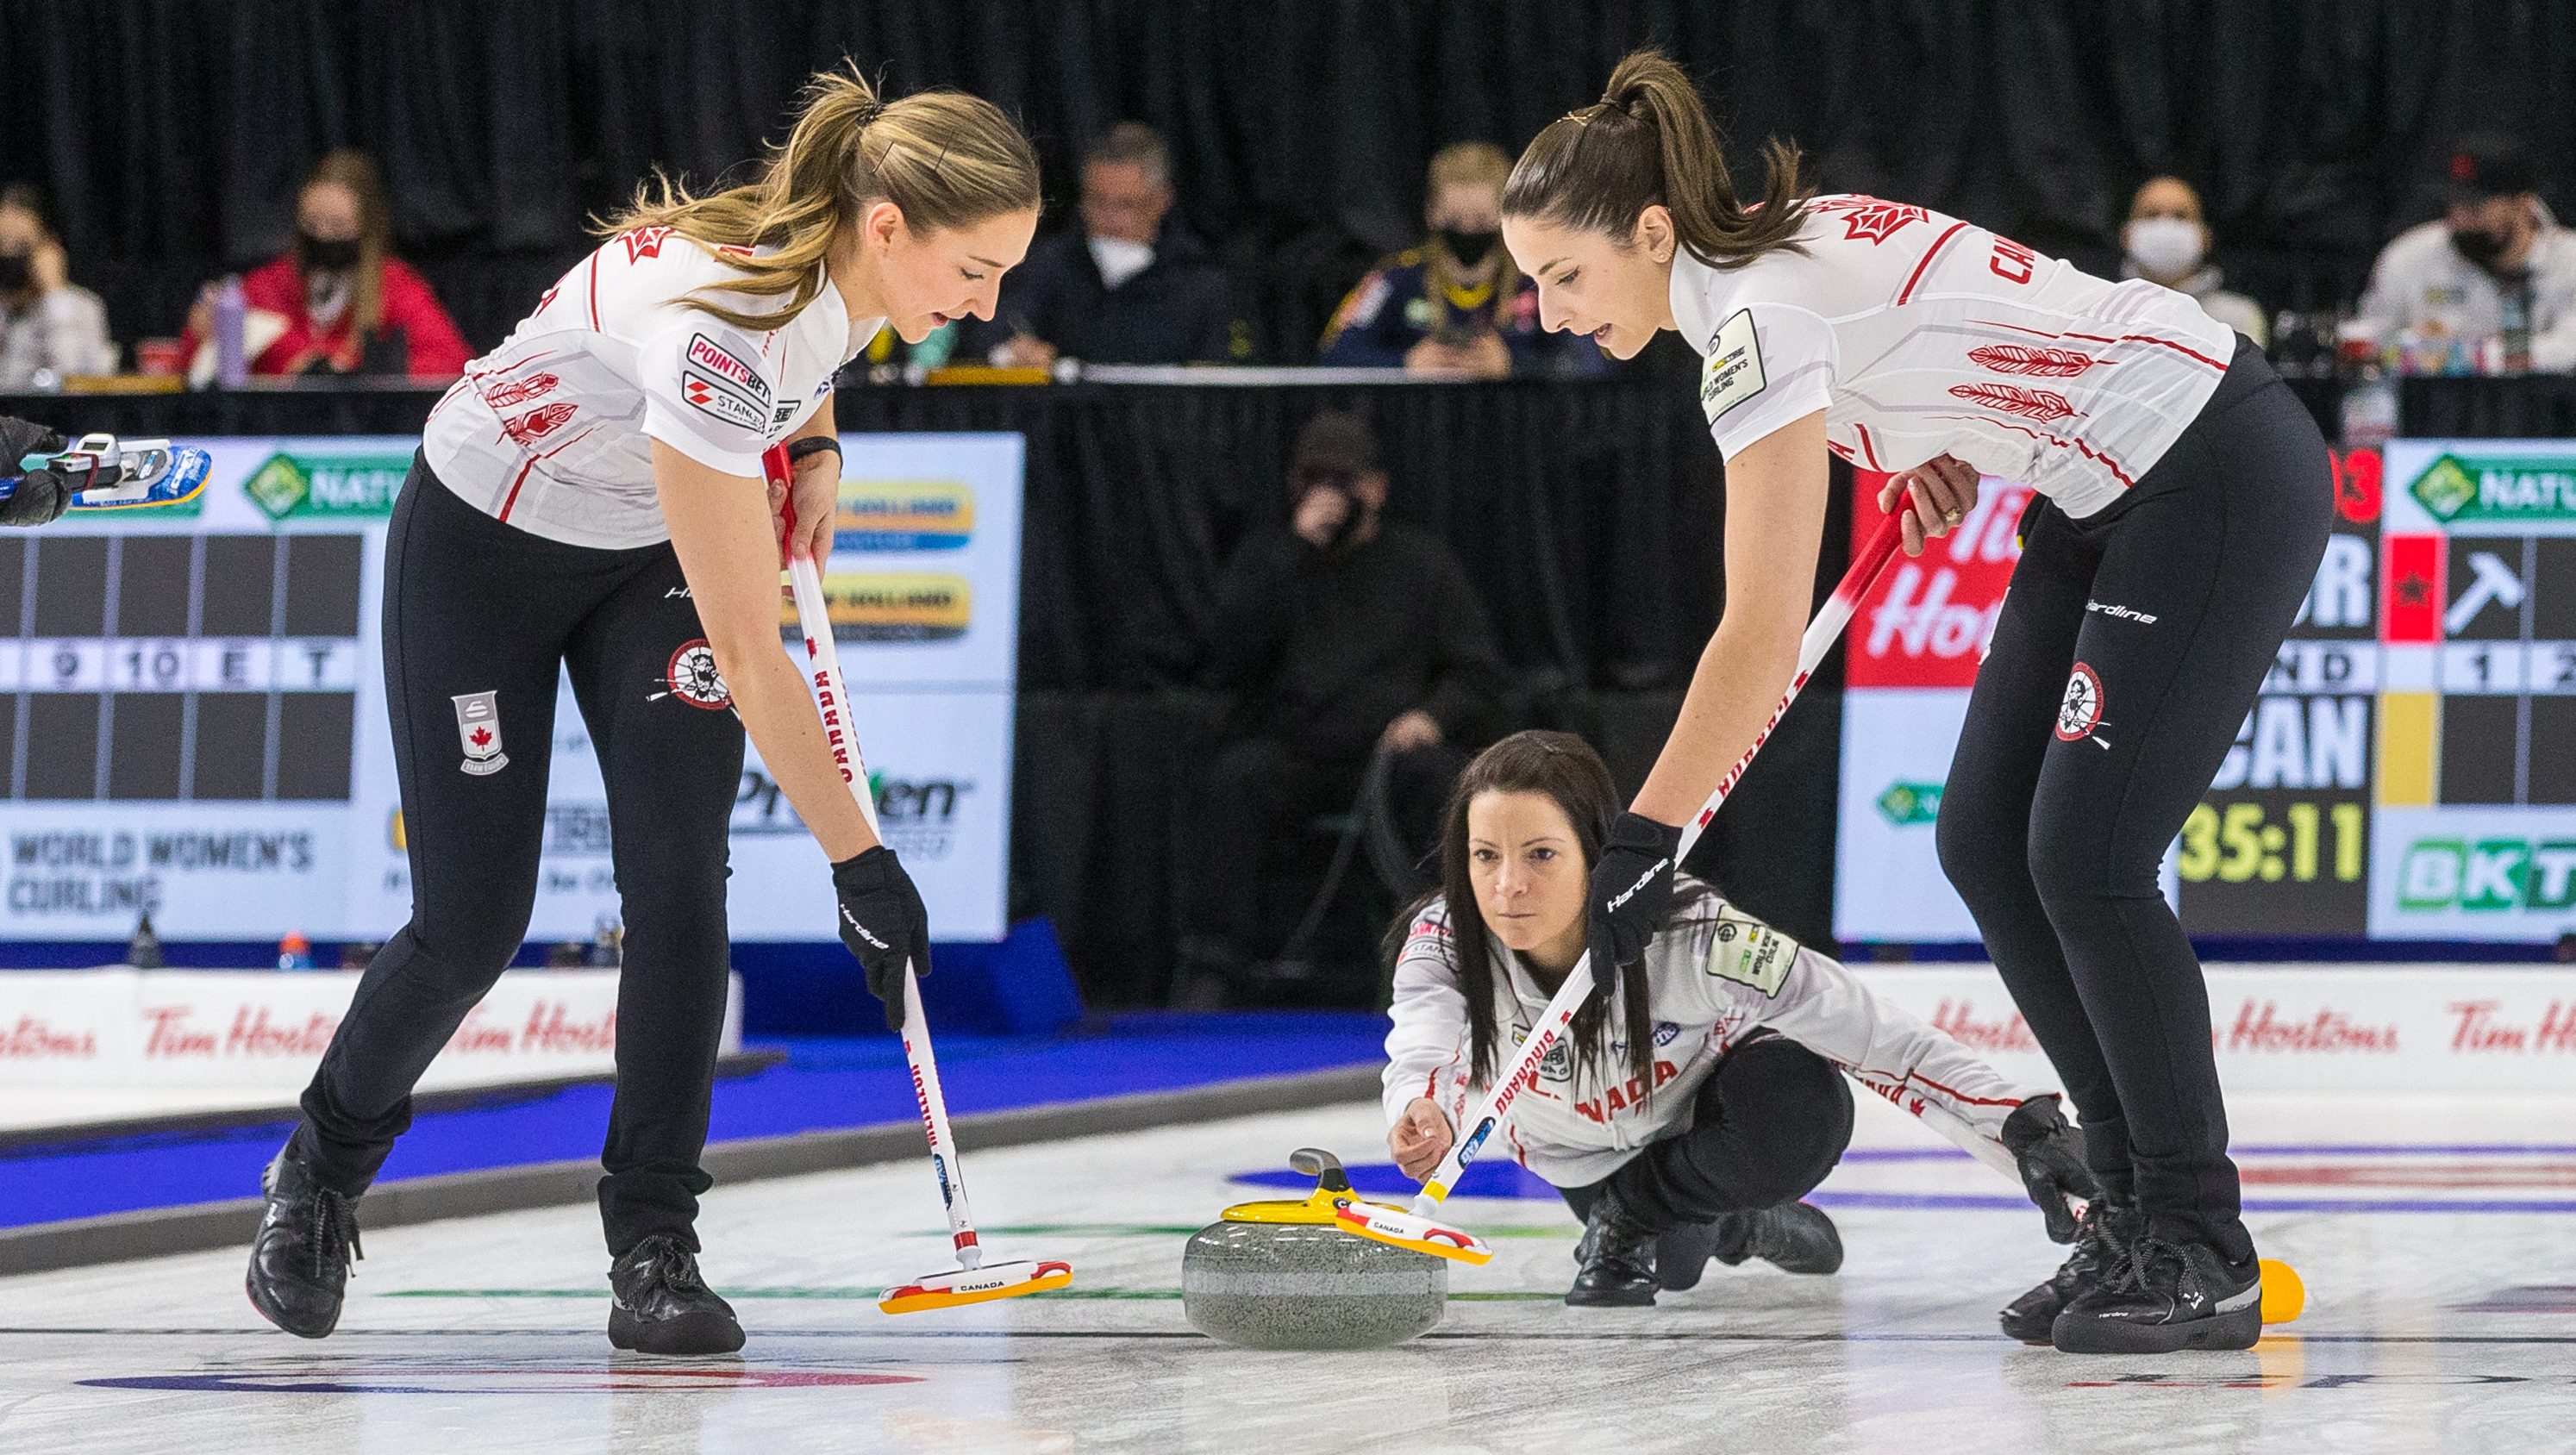 Team Einarson qualifies Canada for the playoffs at Women's World